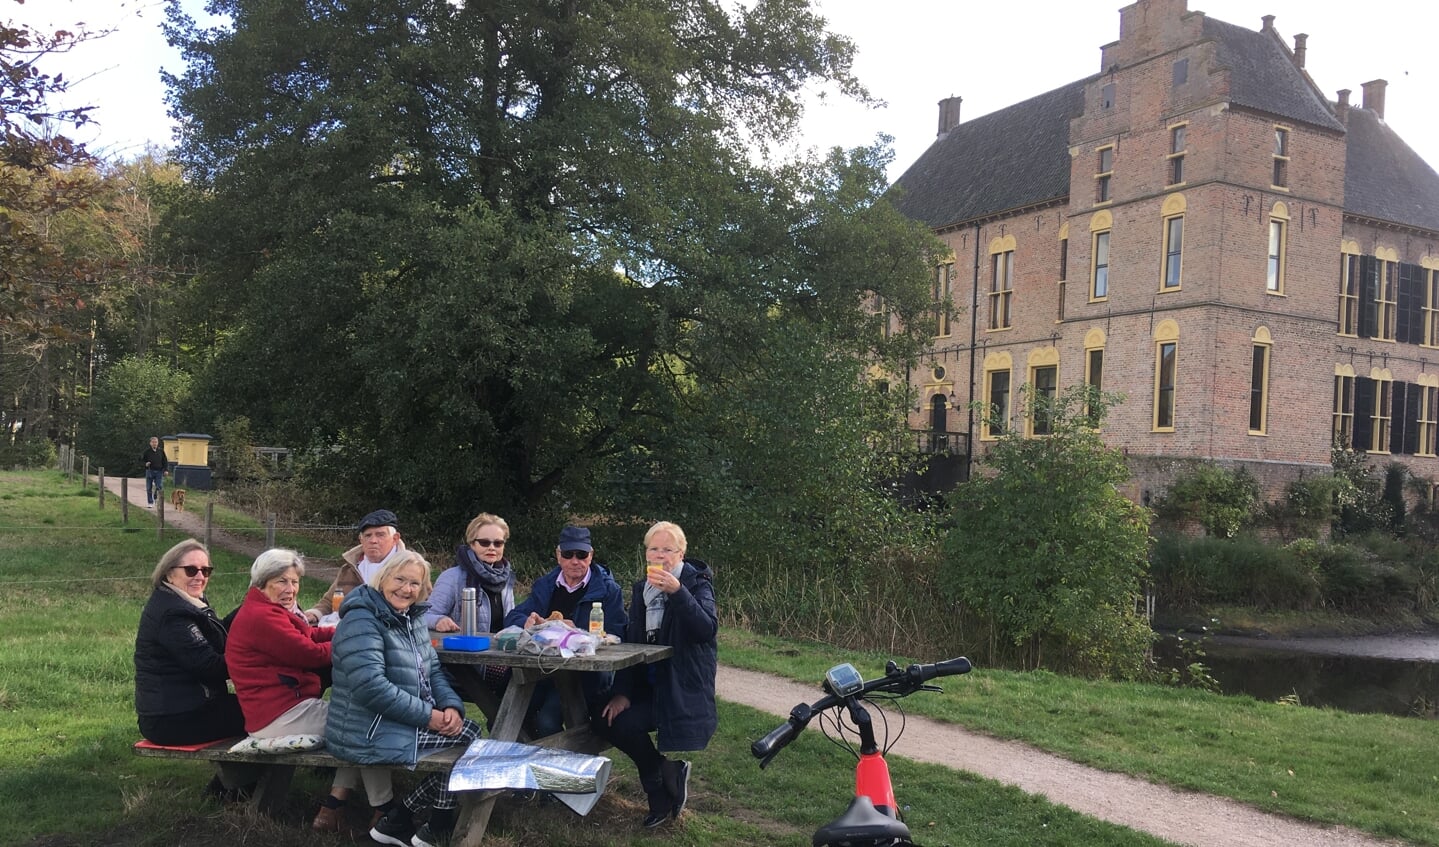 De 40 km fietsgroep van Marian probeert alle lunchmogelijkheden uit, hier maken de deelnemers gebruik van een bankje bij een kasteel. Foto: Stichting Gilde Zutphen